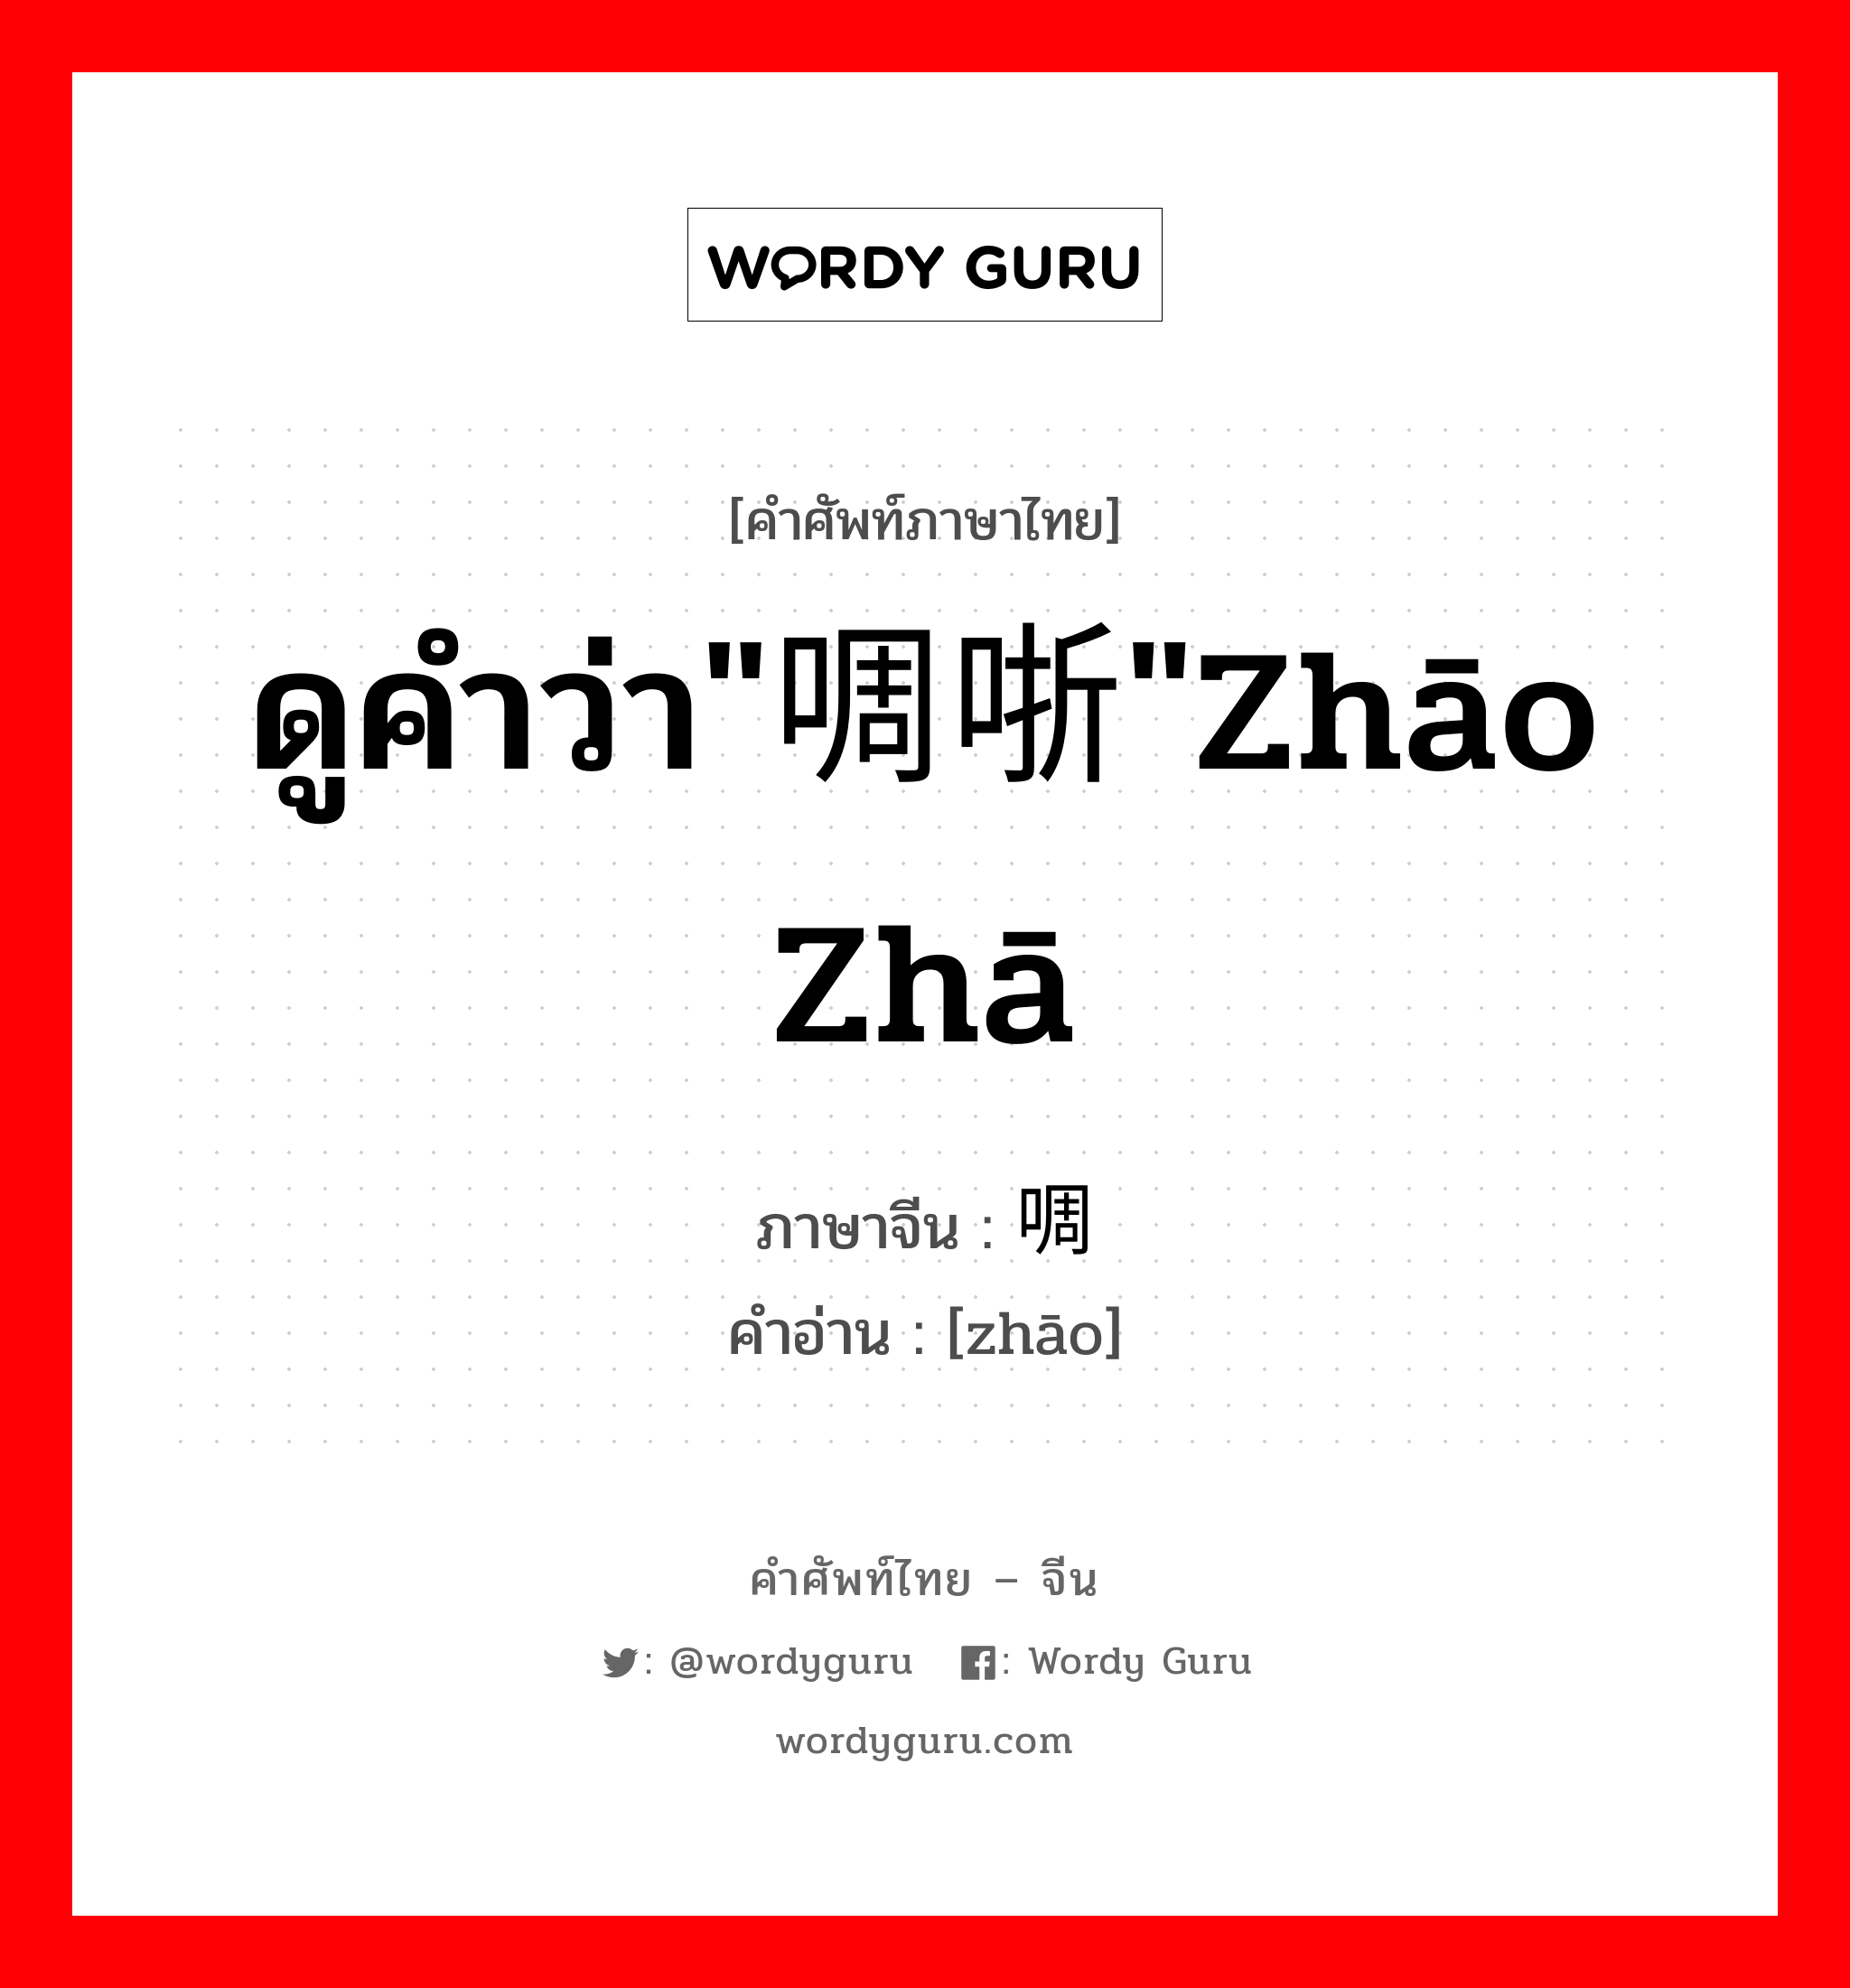 ดูคำว่า"啁哳"zhāo zhā ภาษาจีนคืออะไร, คำศัพท์ภาษาไทย - จีน ดูคำว่า"啁哳"zhāo zhā ภาษาจีน 啁 คำอ่าน [zhāo]